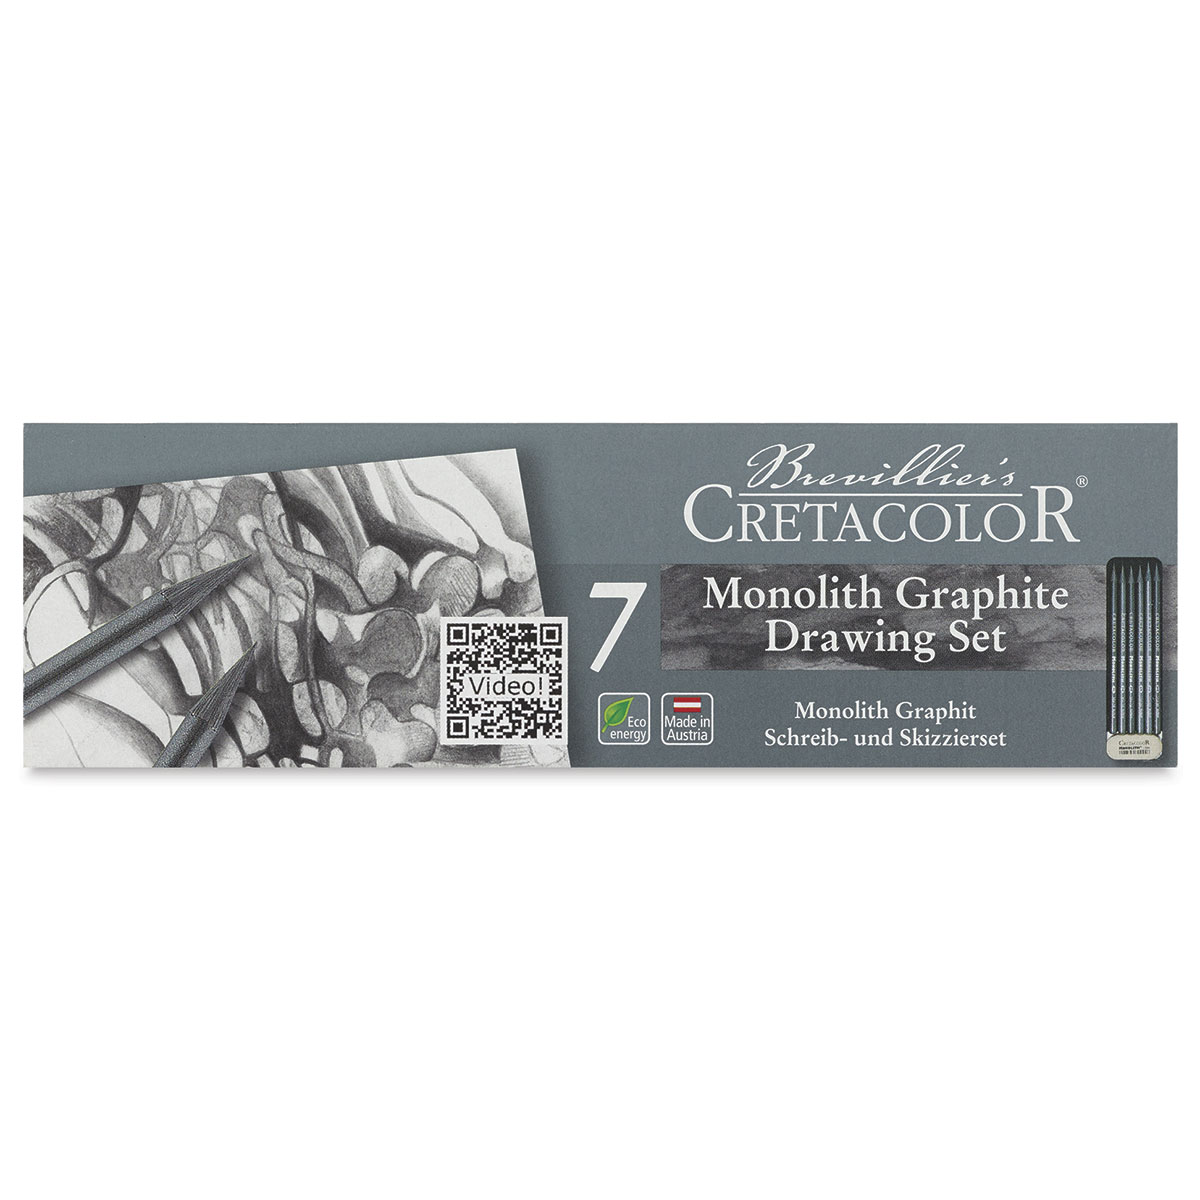 Cretacolor Monolith Woodless Graphite Pencil - HB